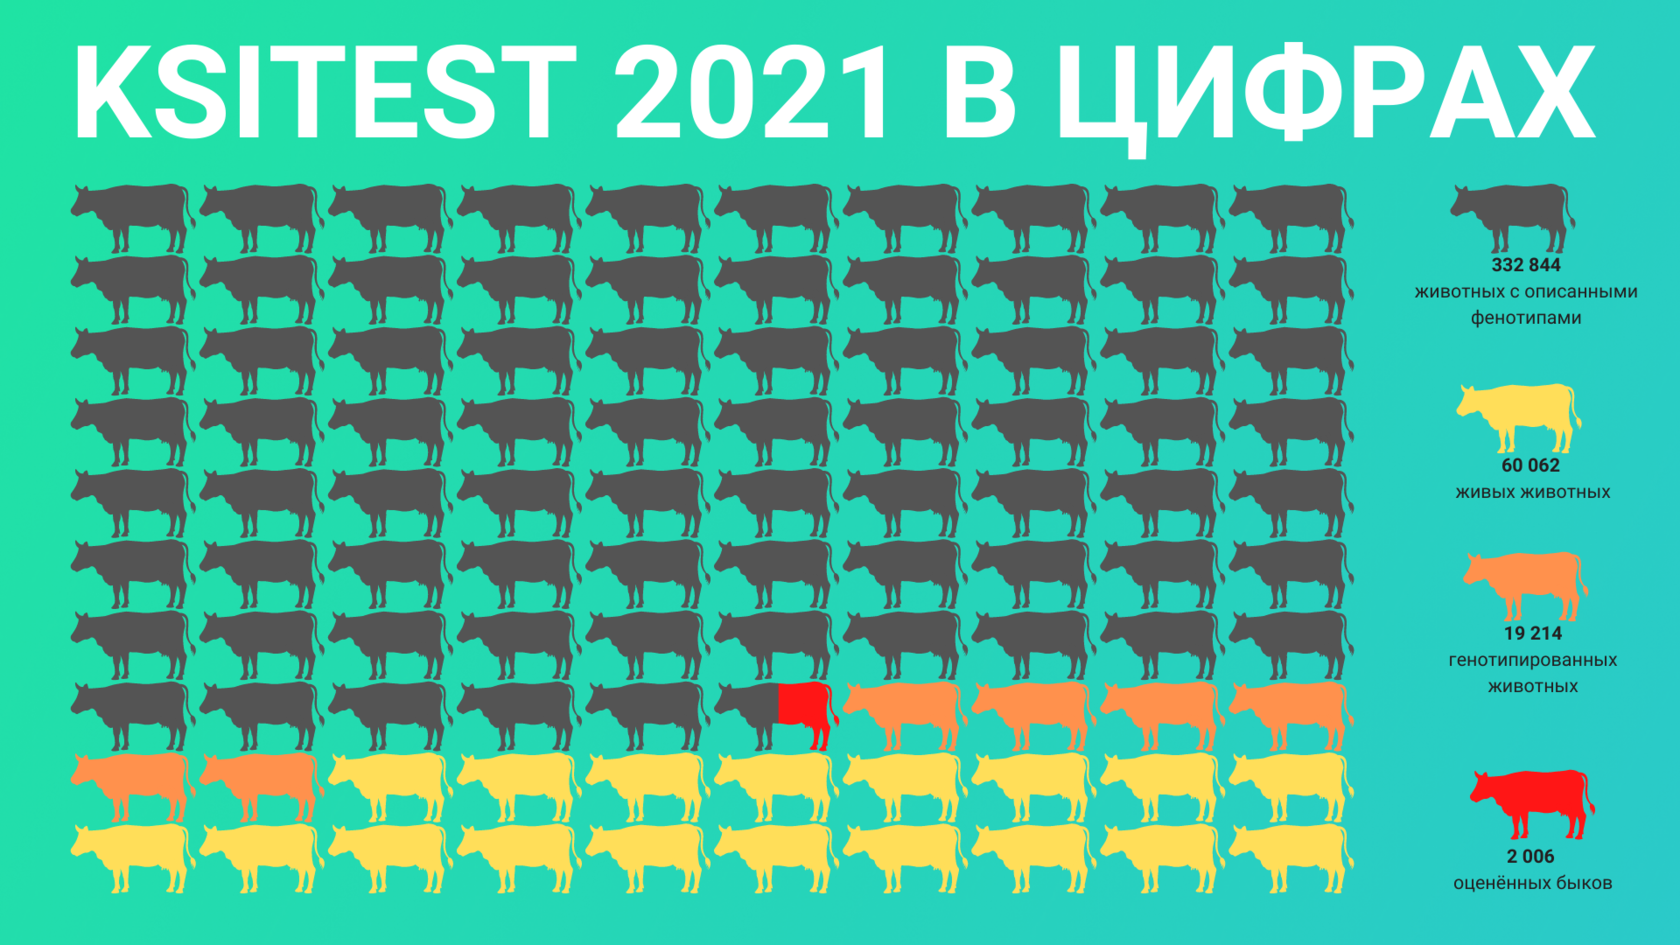 количество животных в референтной базе на декабрь 2021 года.png